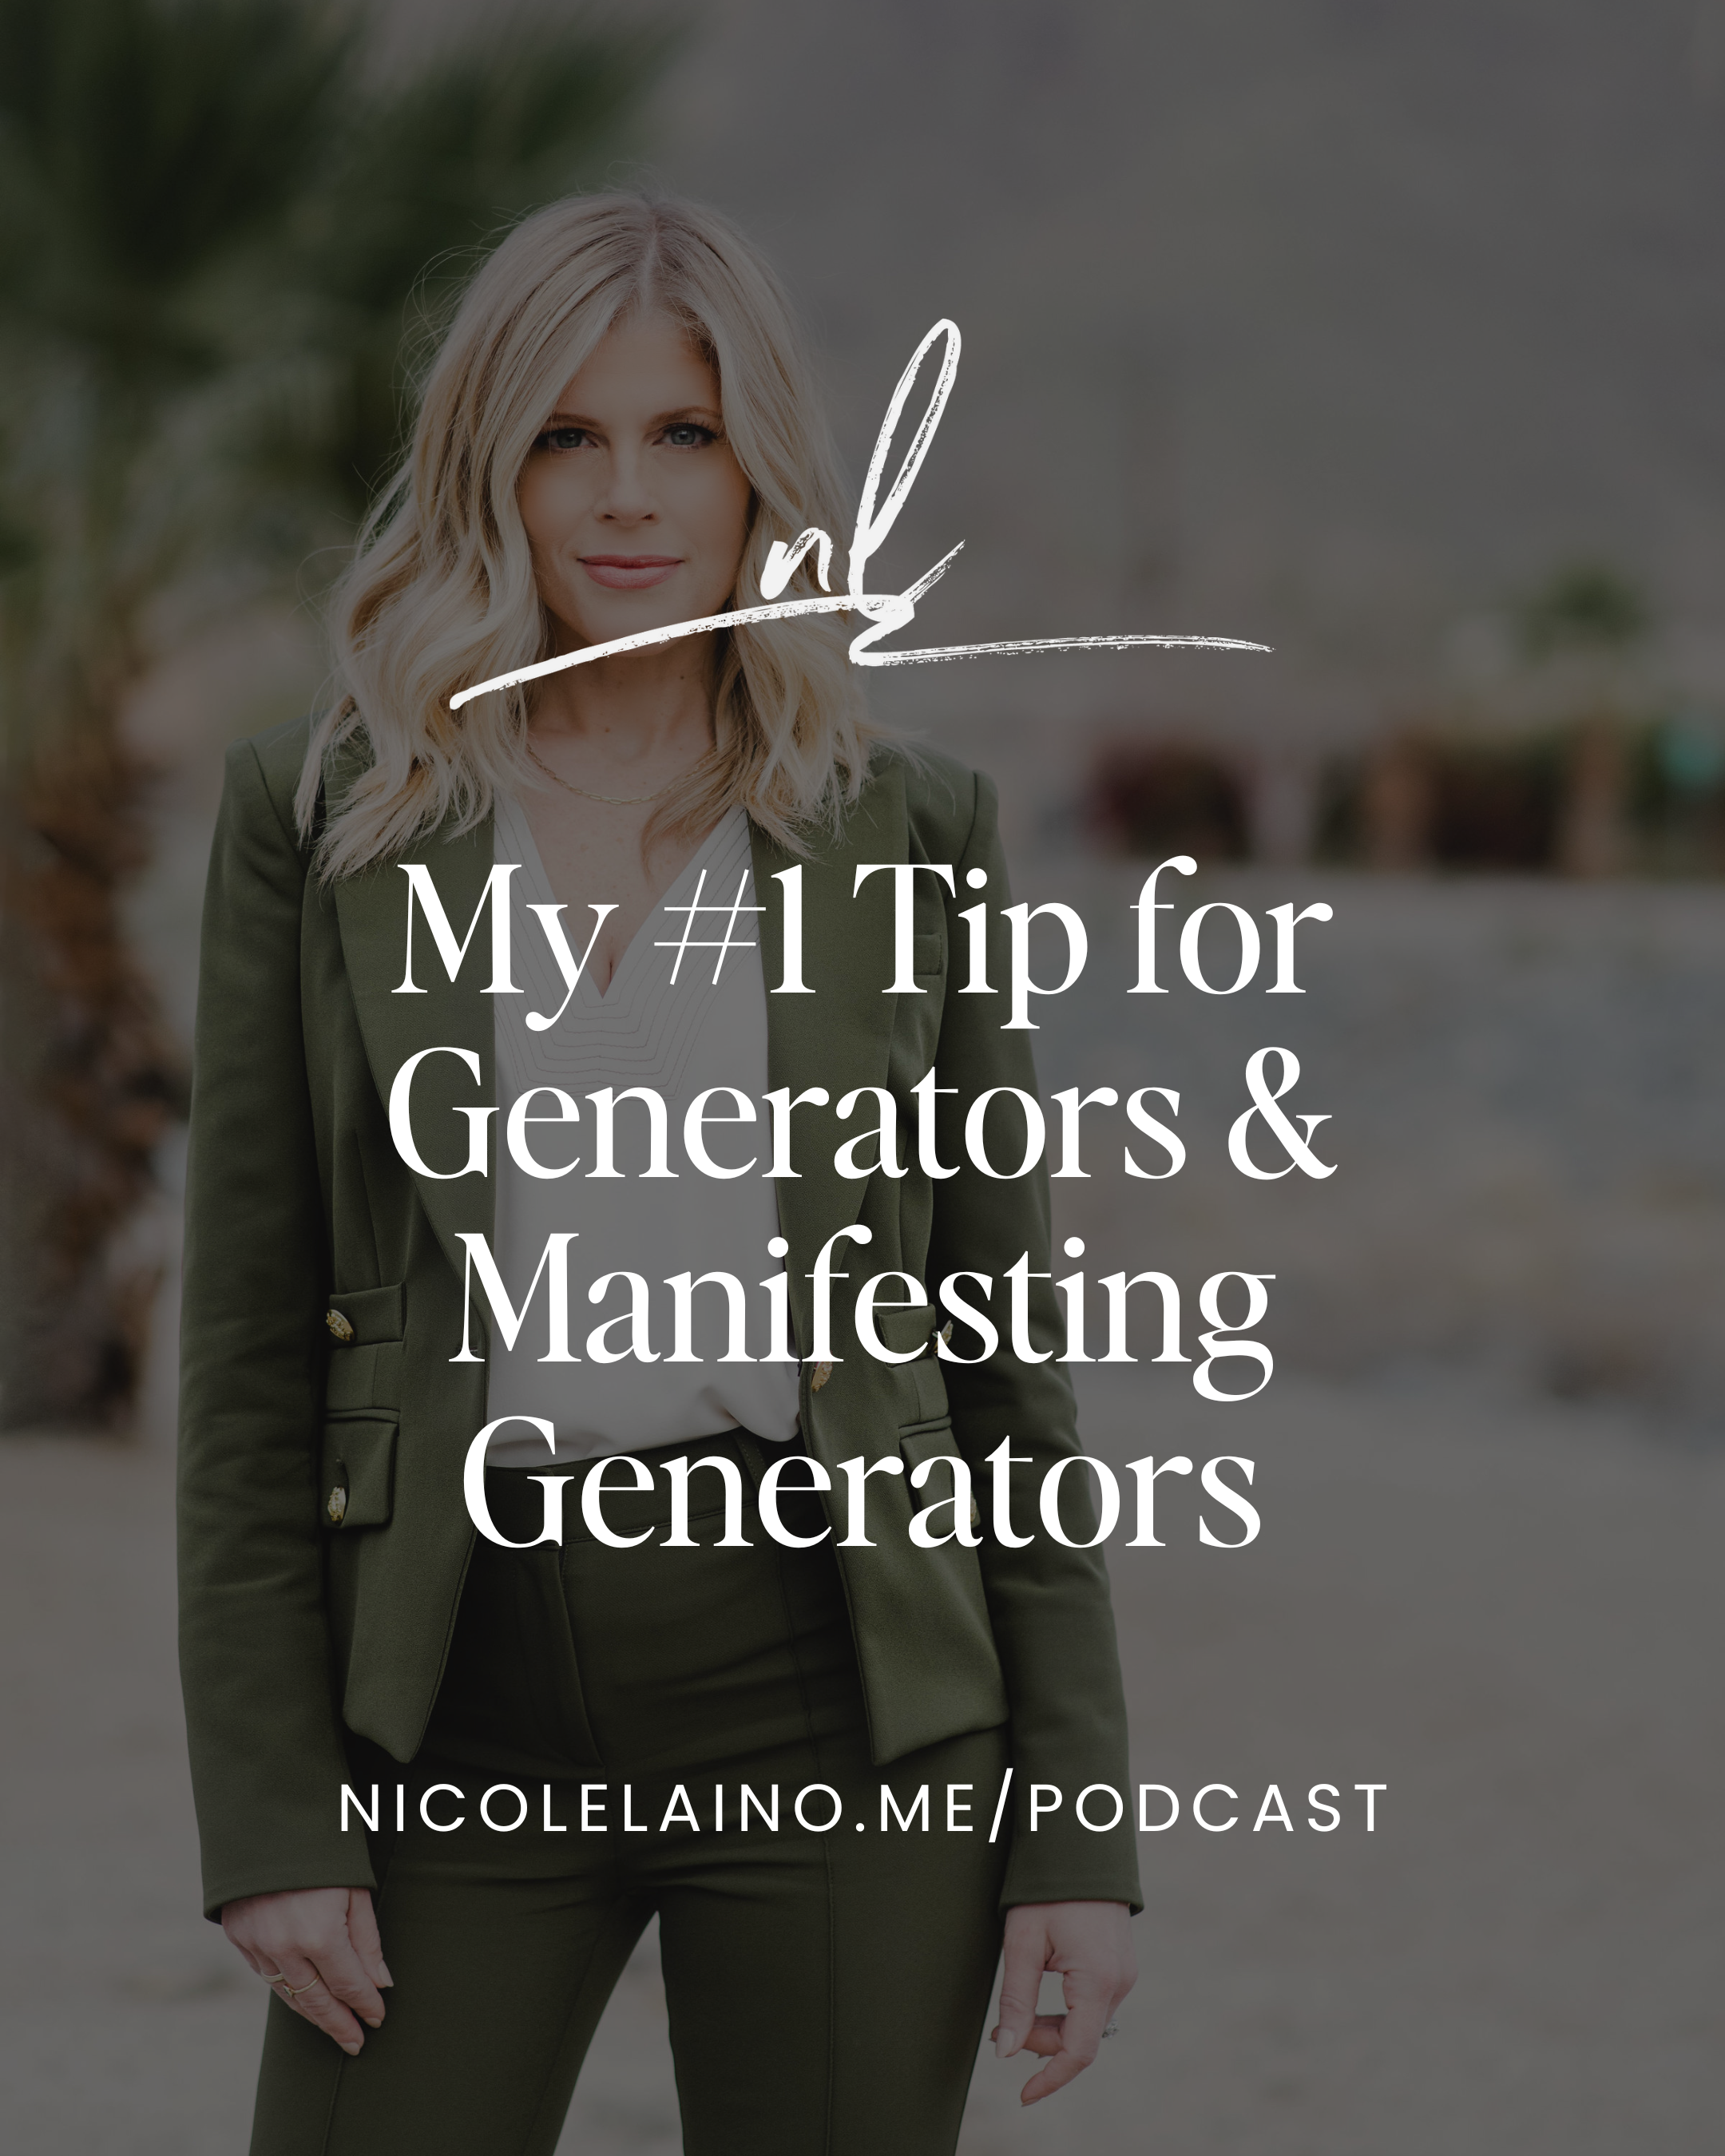 My #1 Tip for Generators & Manifesting Generators